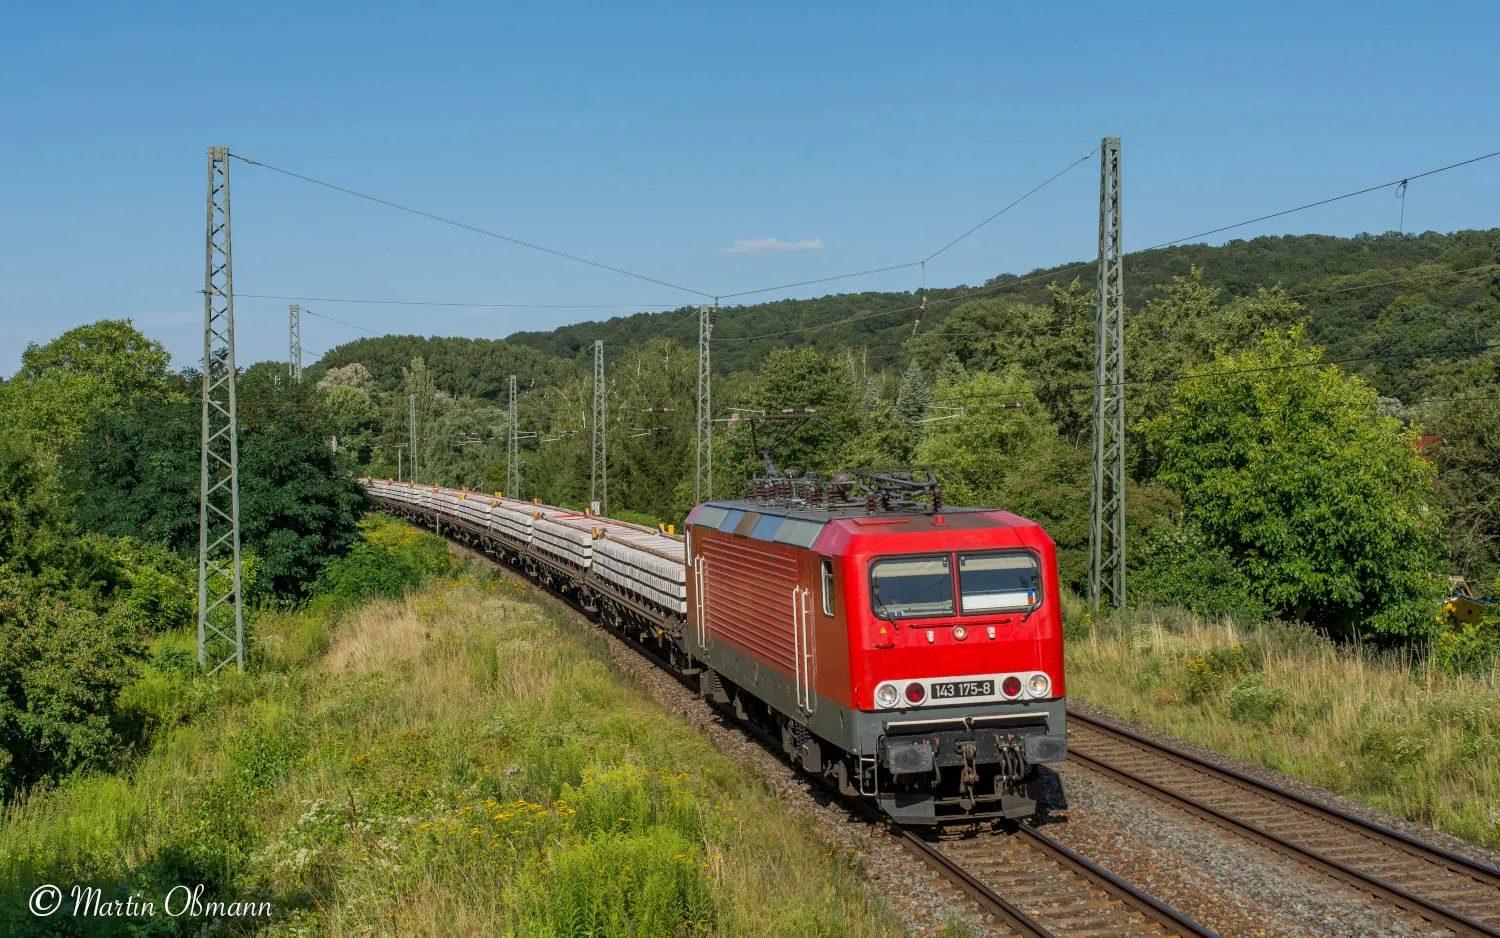 InterTourex GmbH Transporte